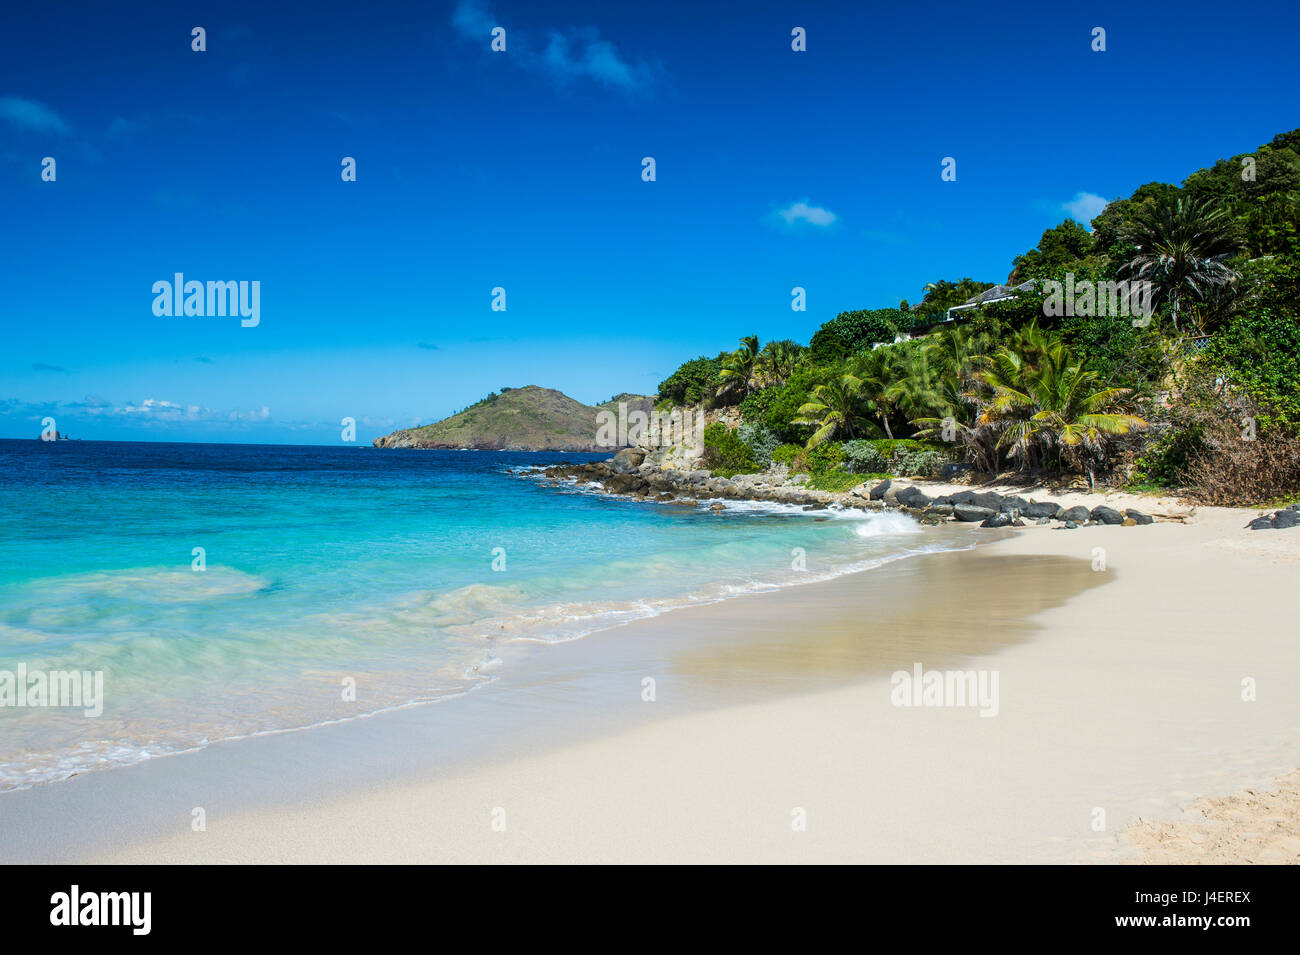 Flamand Beach, St. Barth (Saint Barthelemy), kleine Antillen, West Indies, Karibik, Mittelamerika Stockfoto